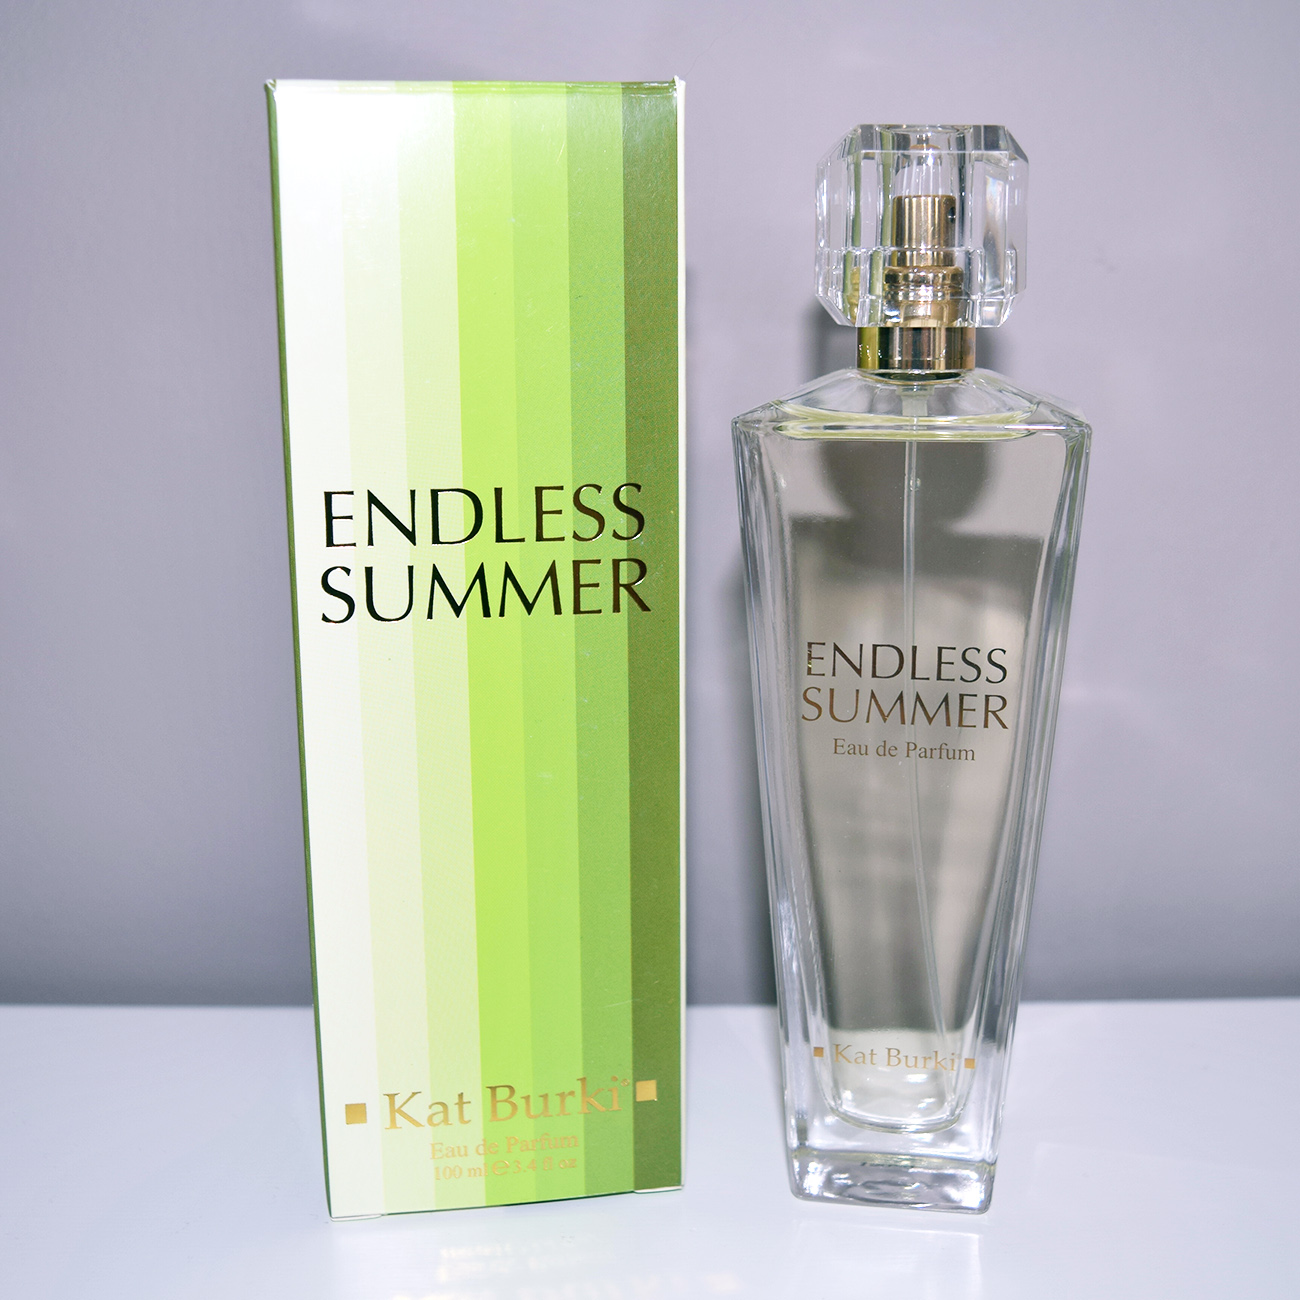 Review: Kat Burki Endless Summer Eau De Parfum